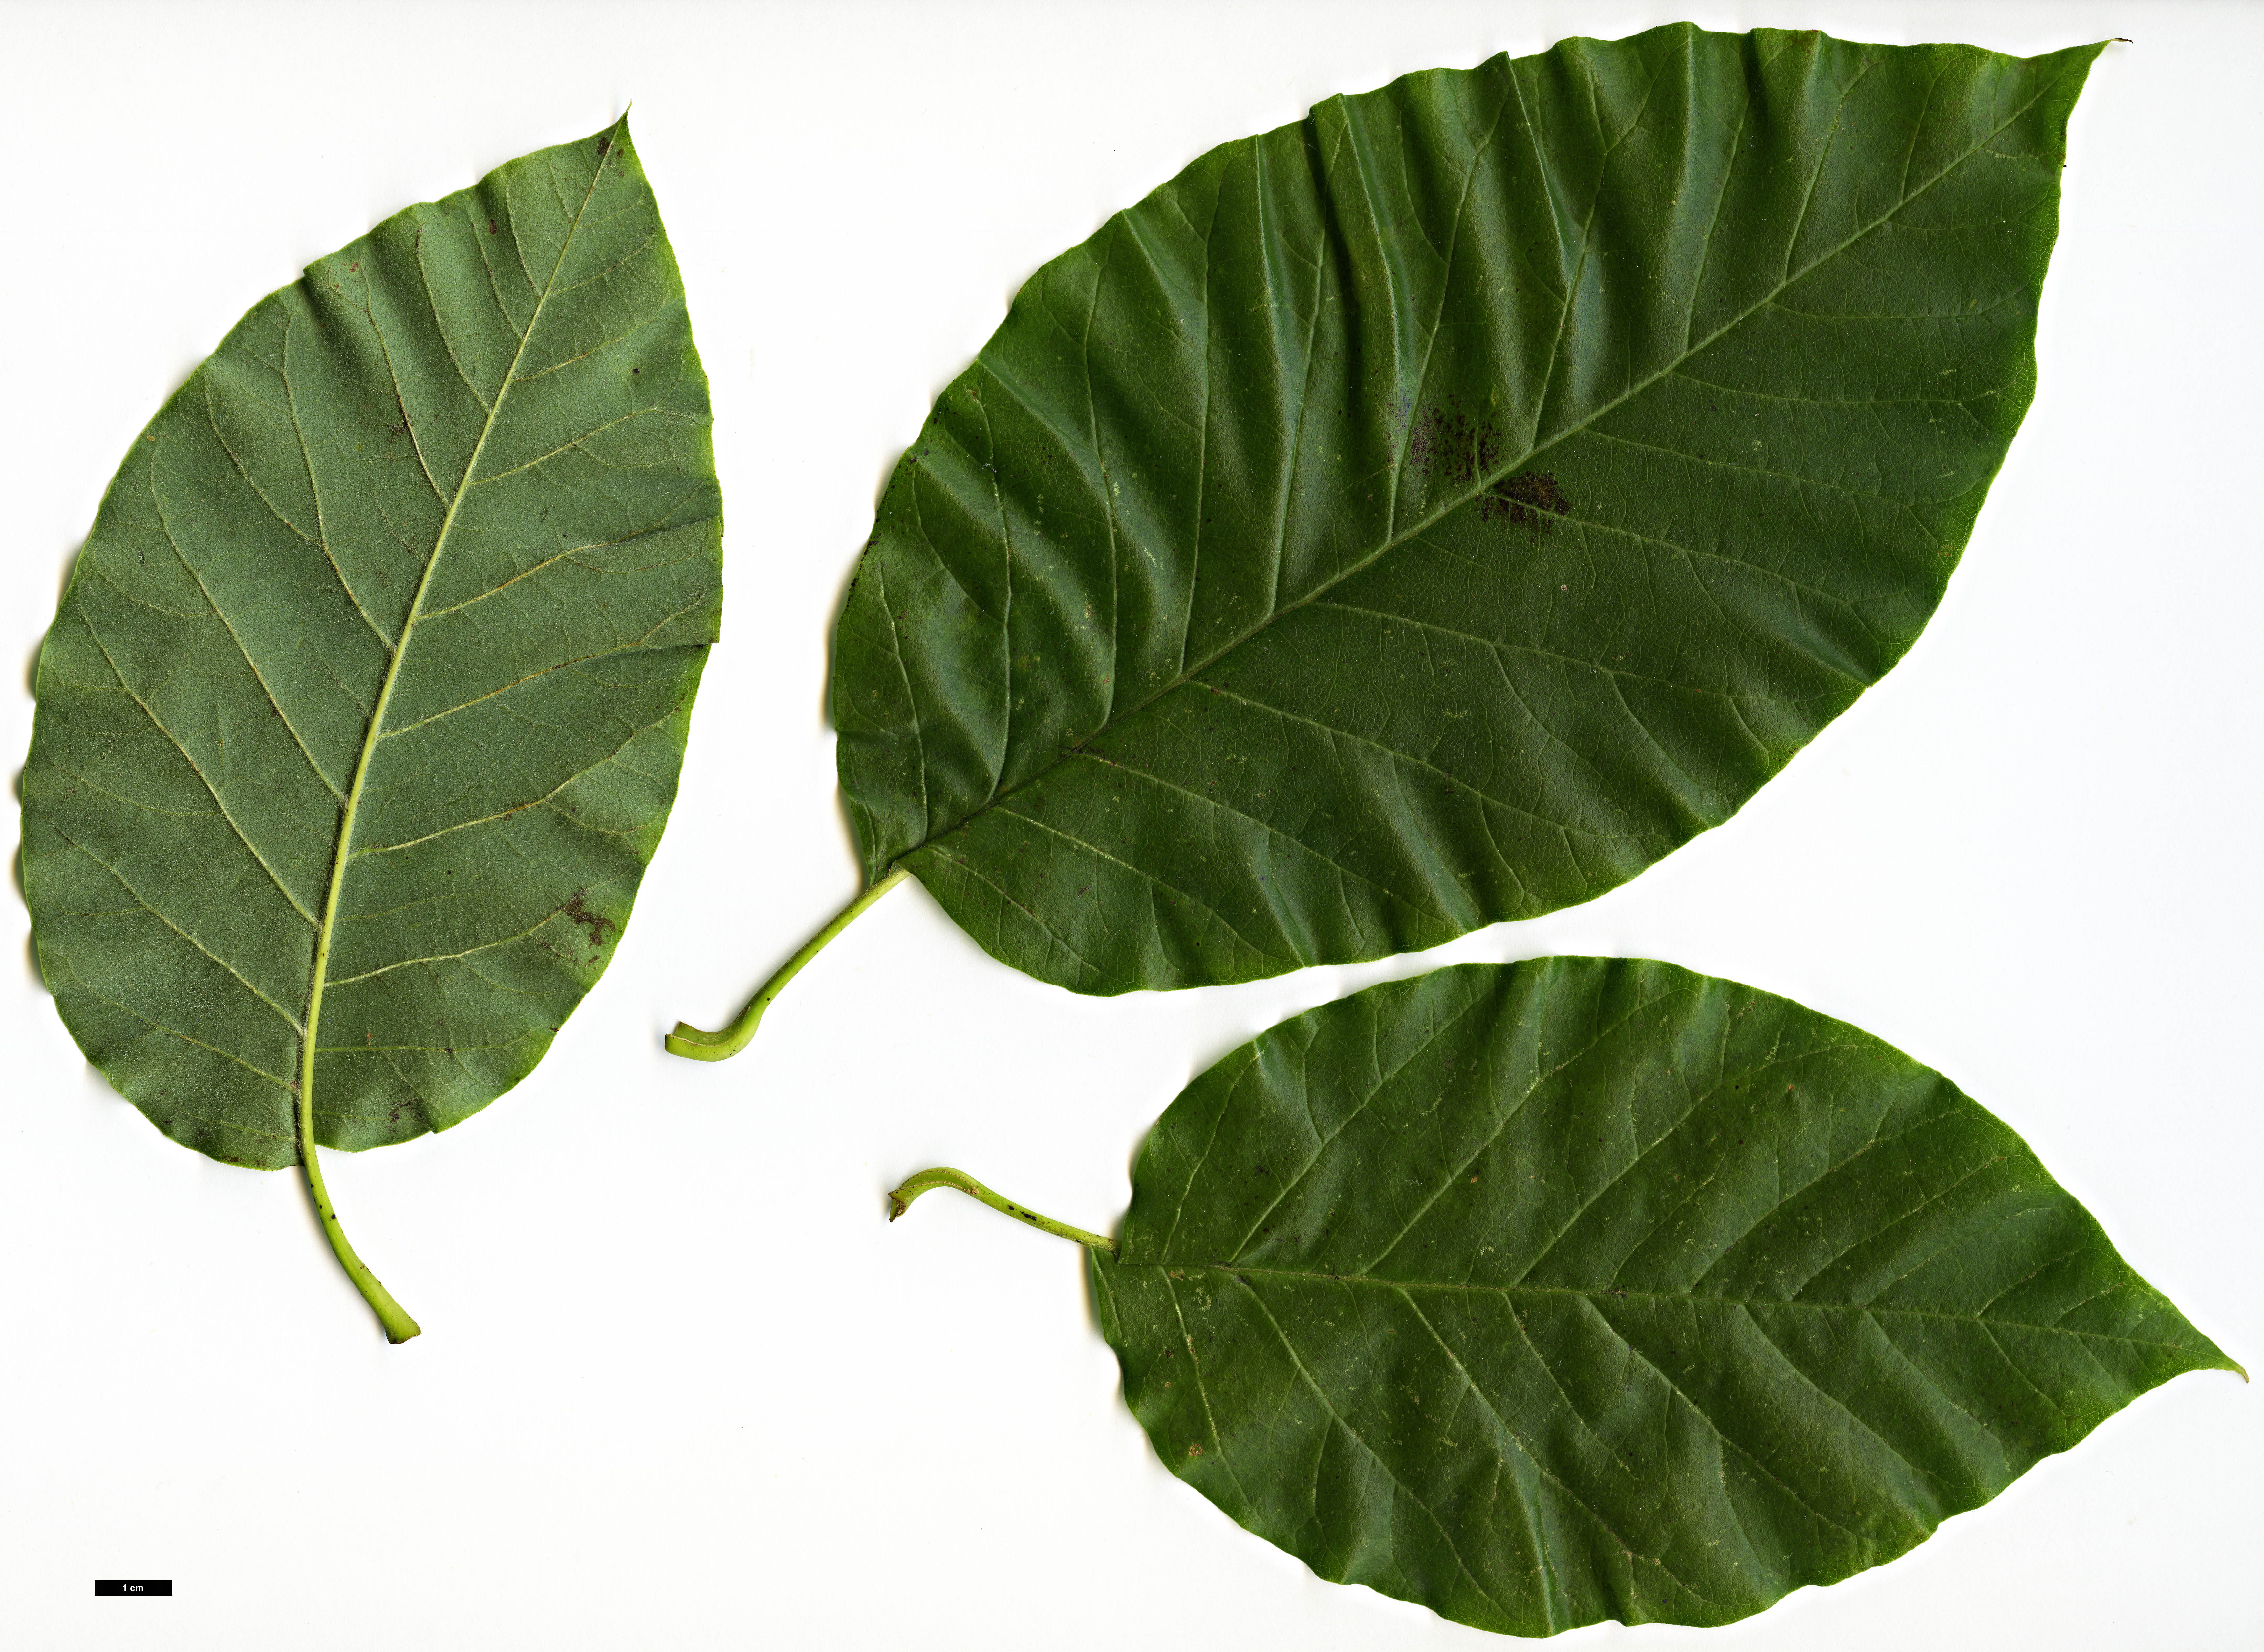 High resolution image: Family: Magnoliaceae - Genus: Magnolia - Taxon: acuminata